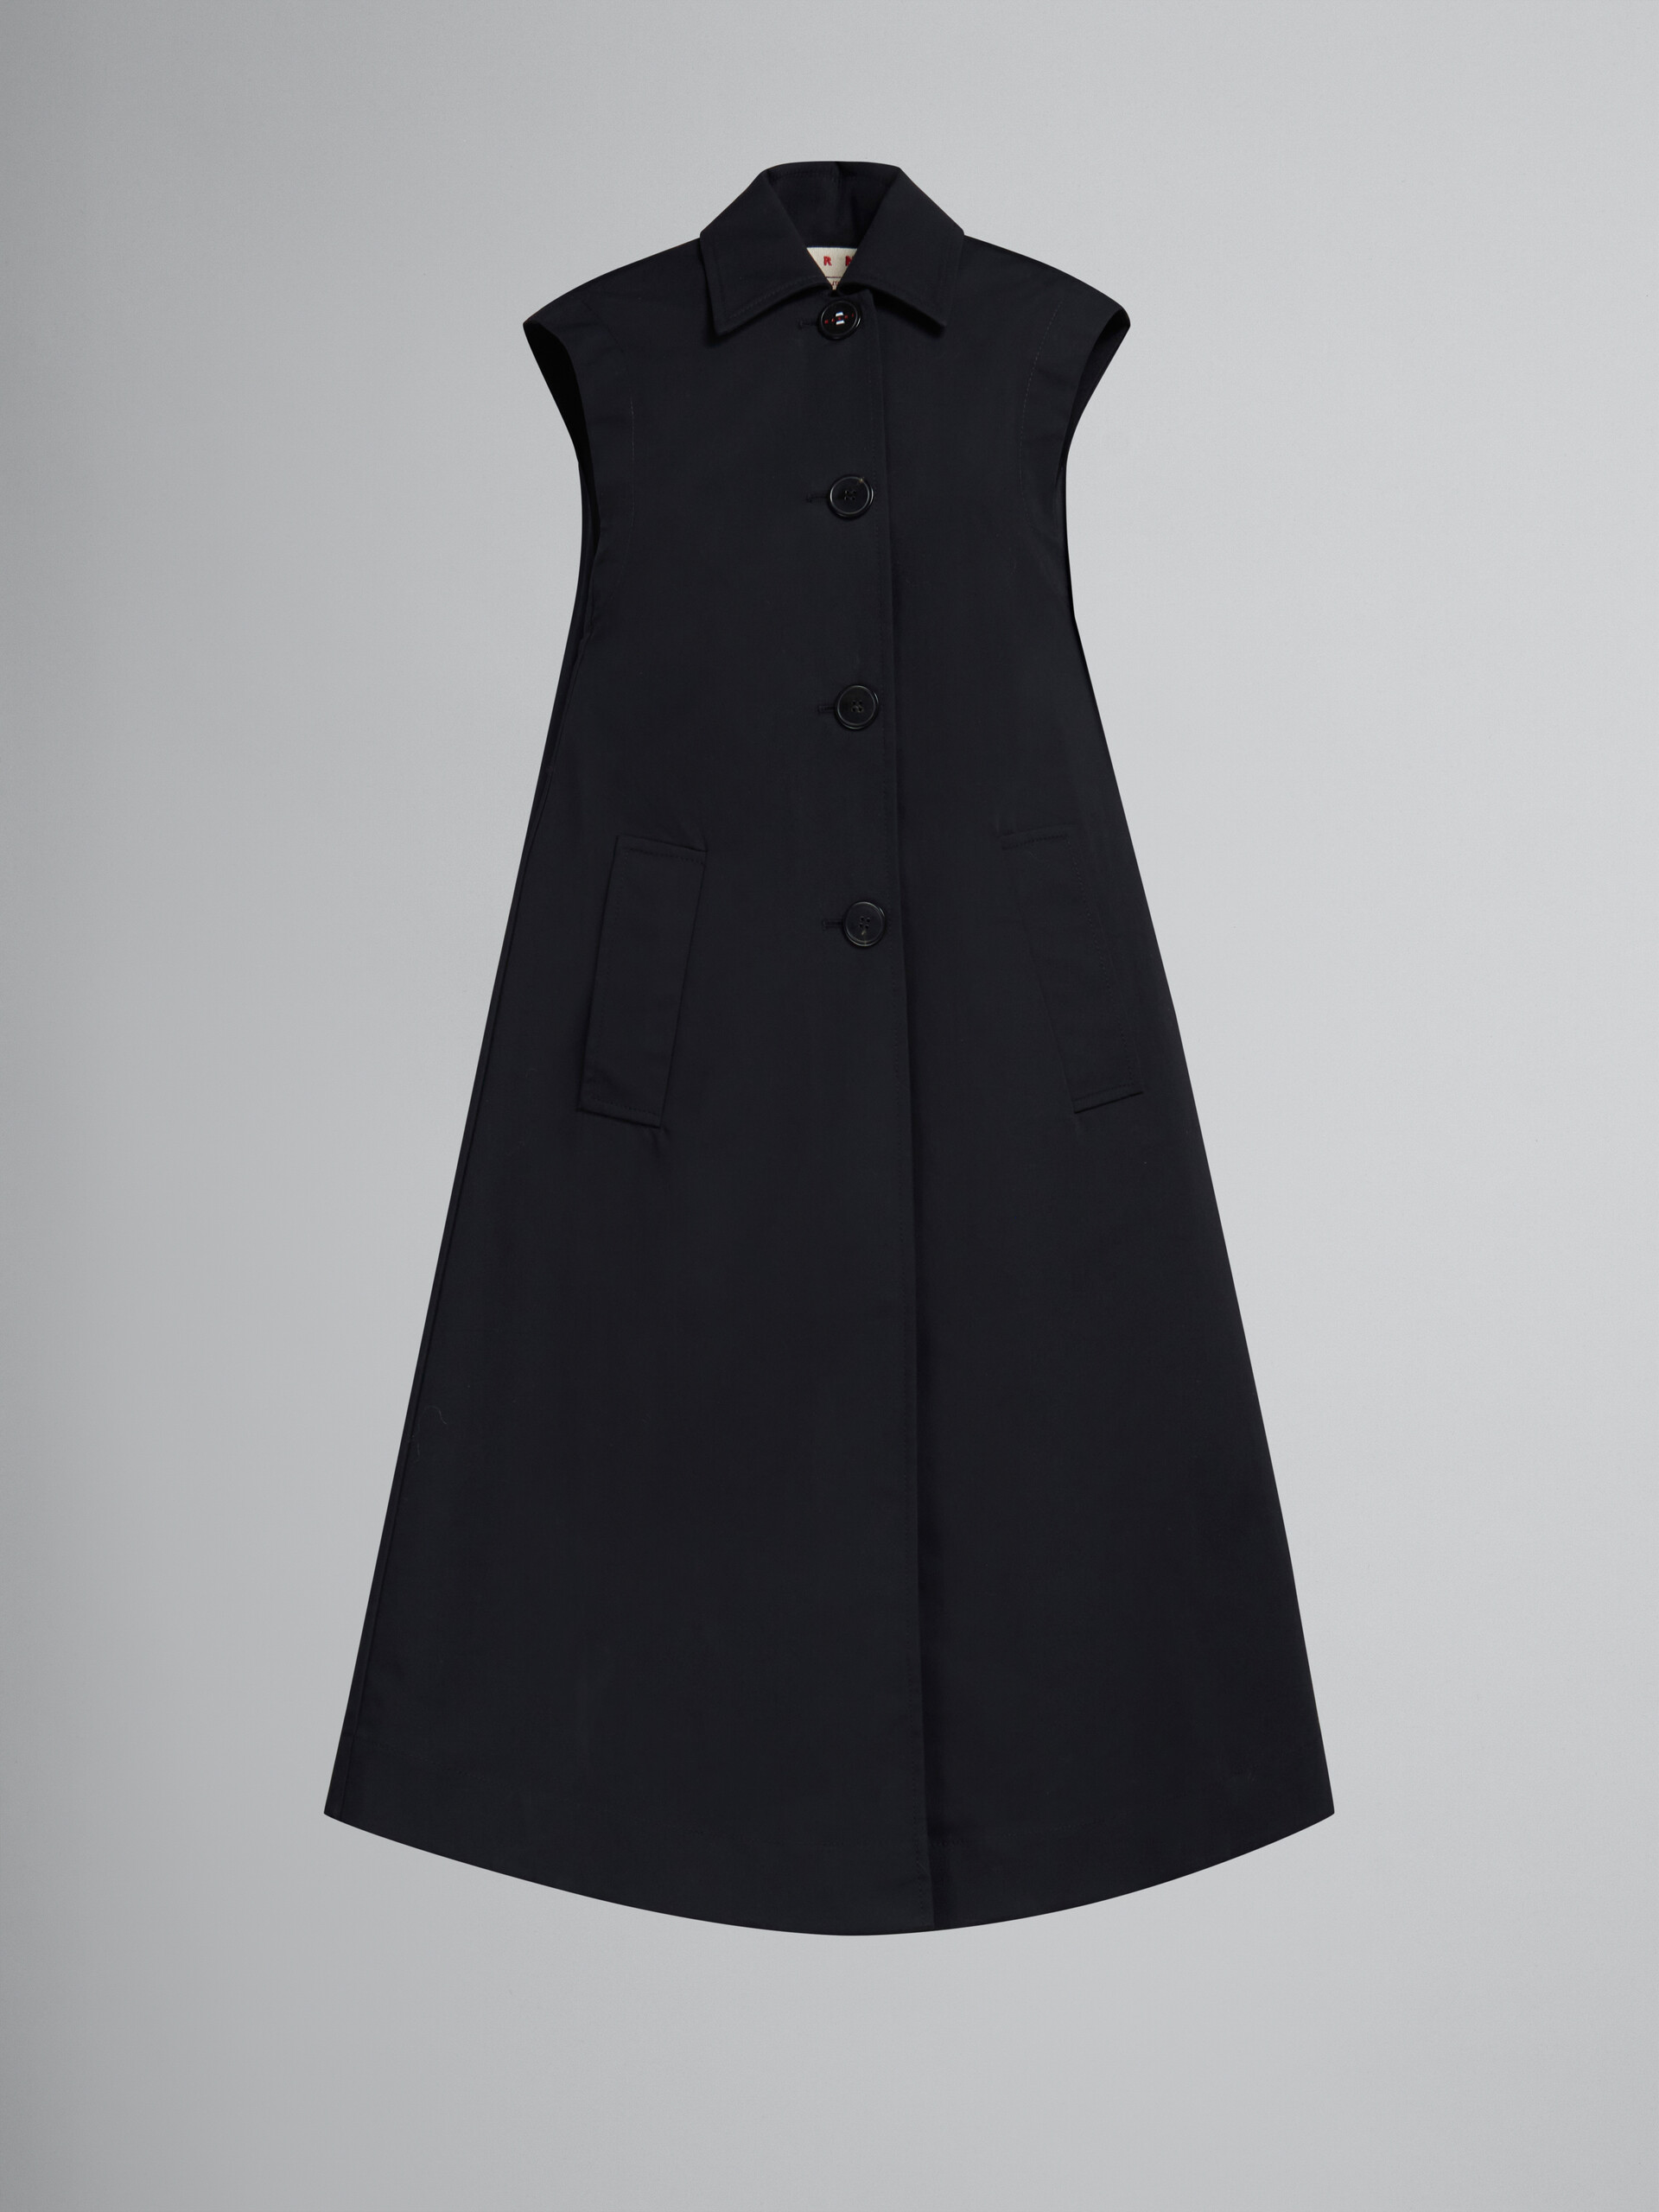 Vestido negro de algodón reconstituido corte cocoon - Chaleco - Image 1